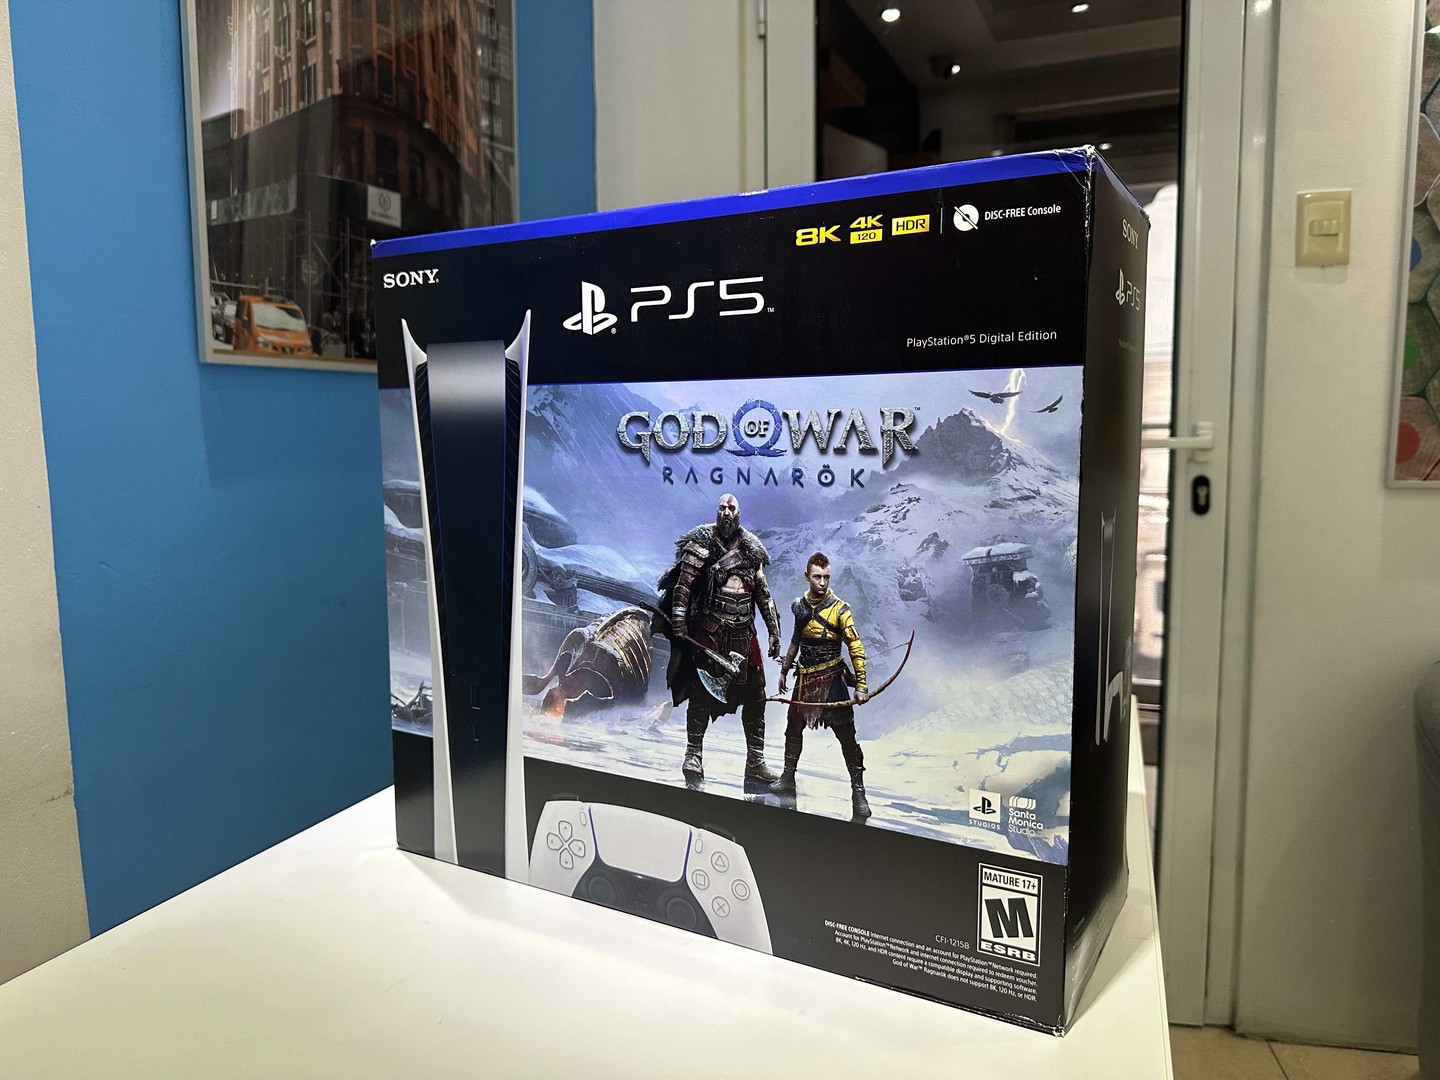 consolas y videojuegos - Vendo Consola PlayStation 5 |God of War Sellados Version Virtual RD$ 32,500 NEG 0